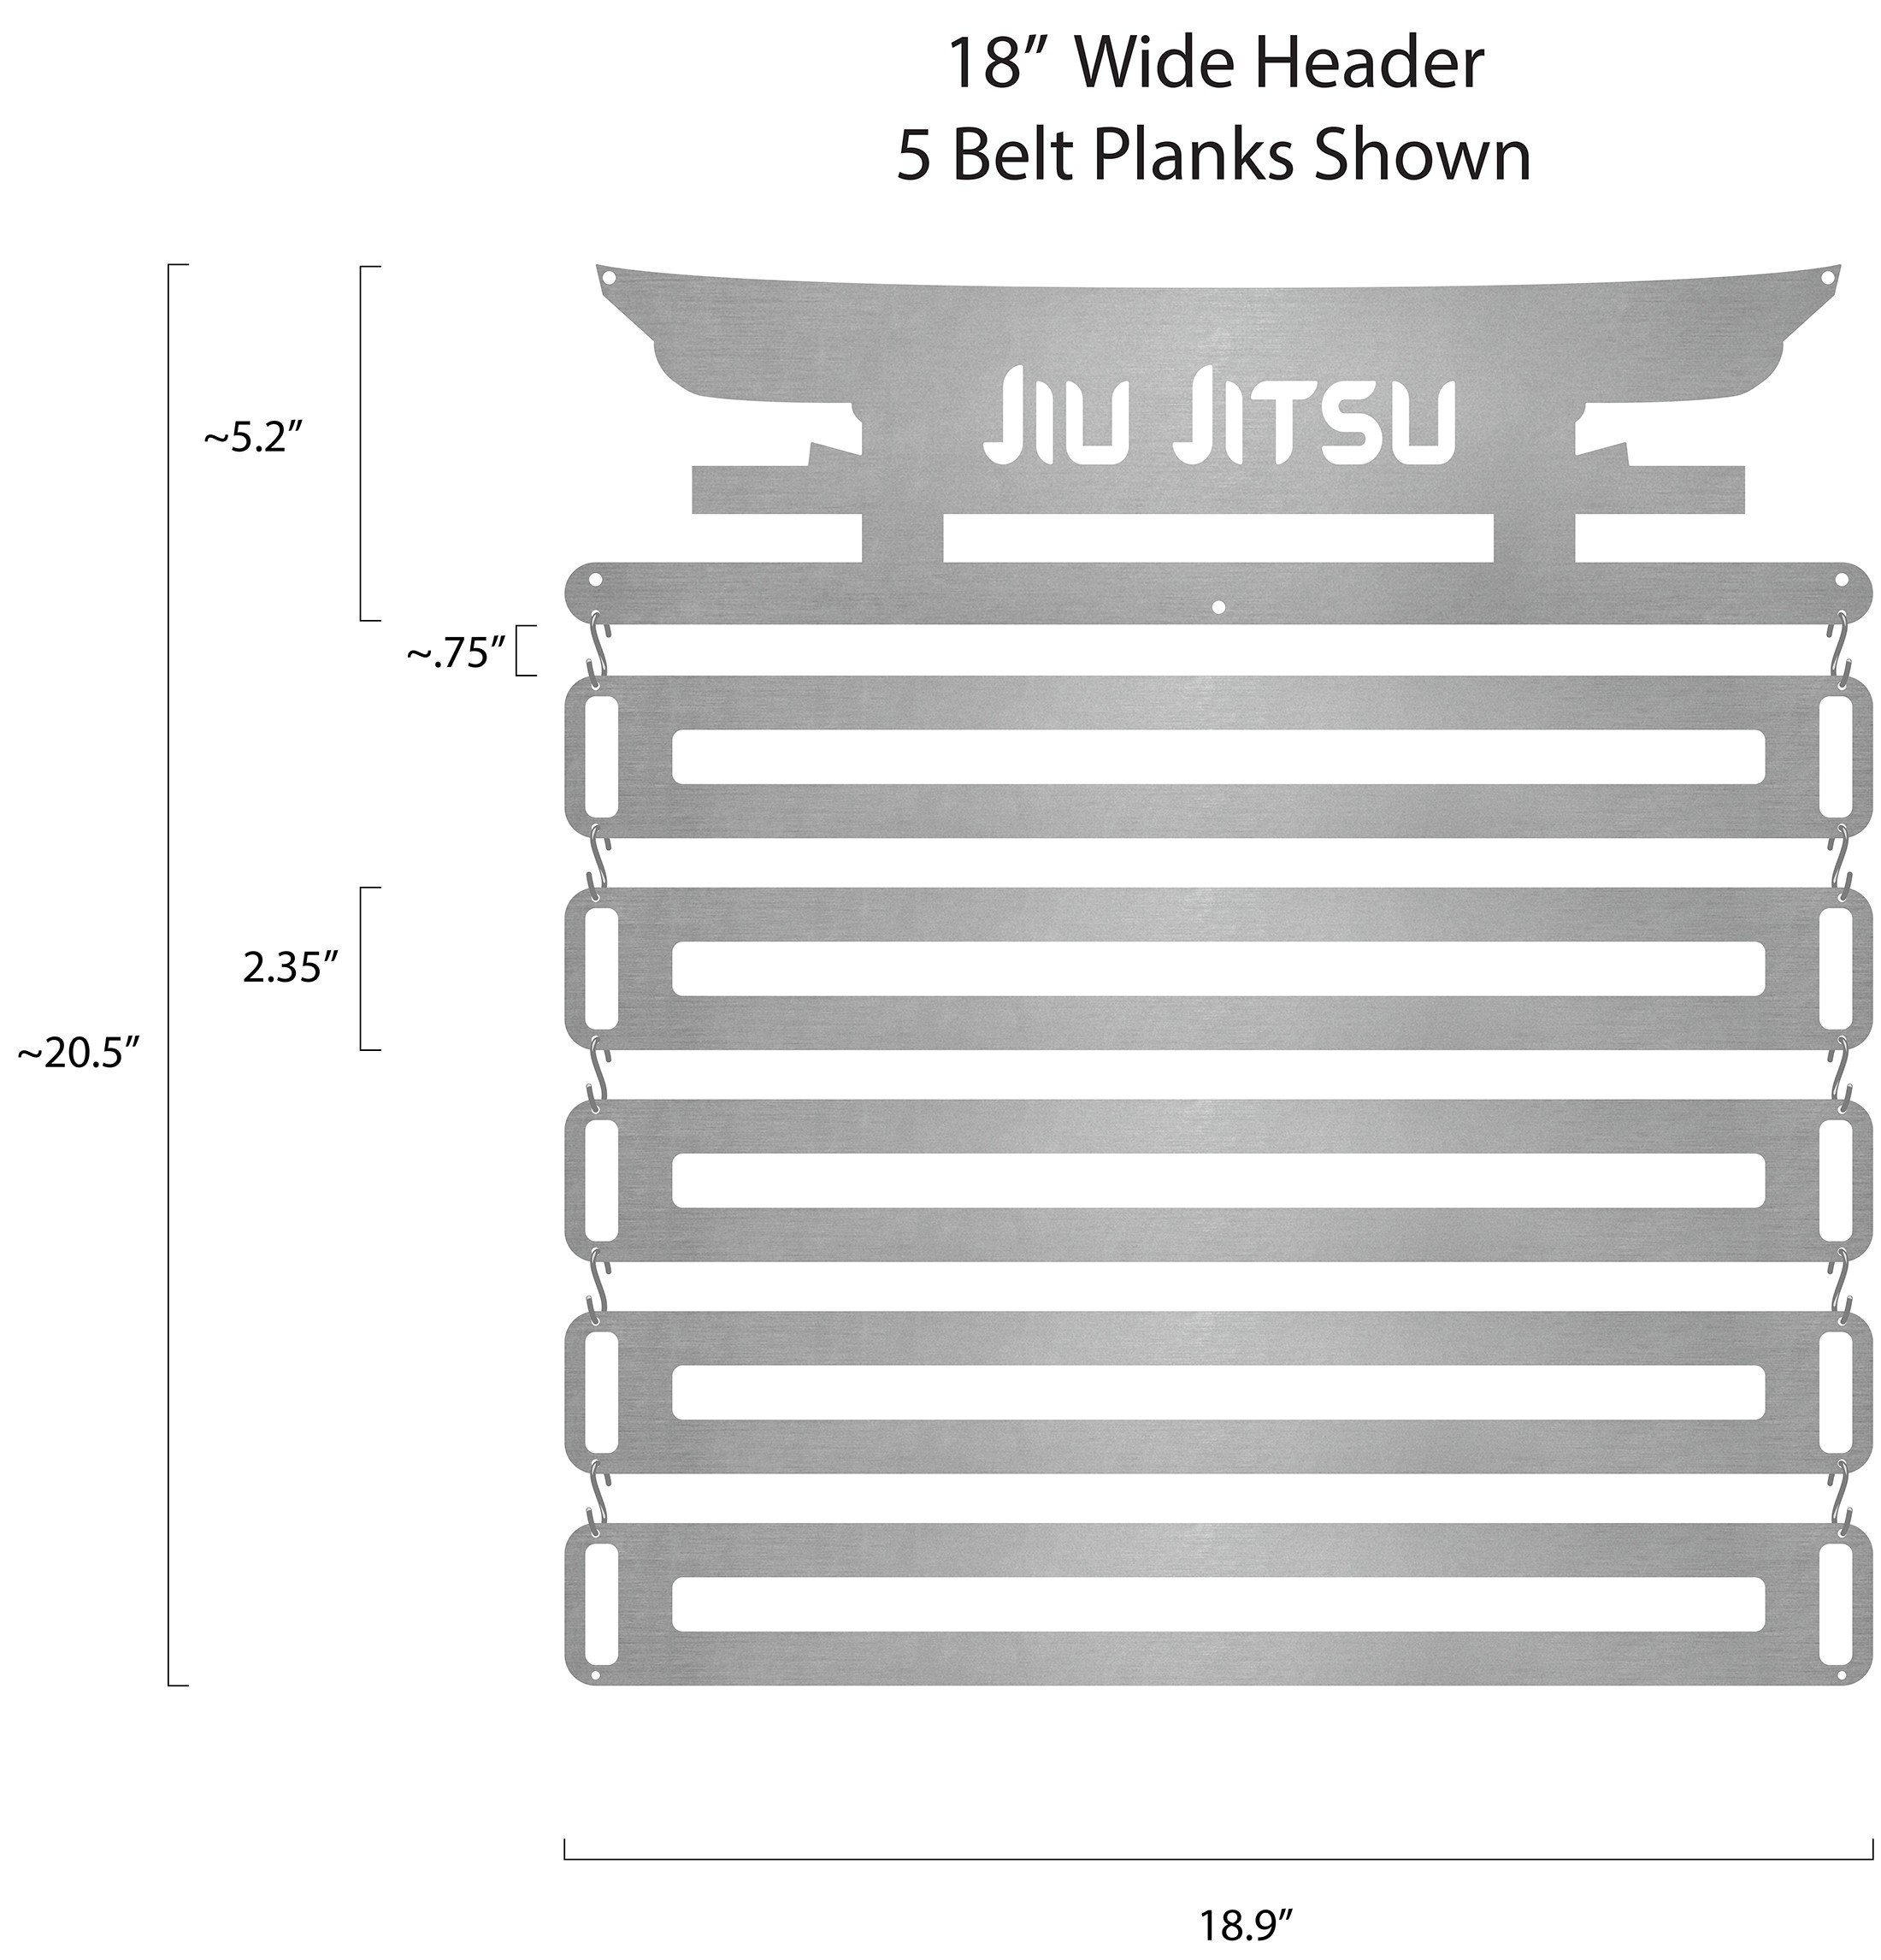 Jiu Jitsu Gateway Belt Display